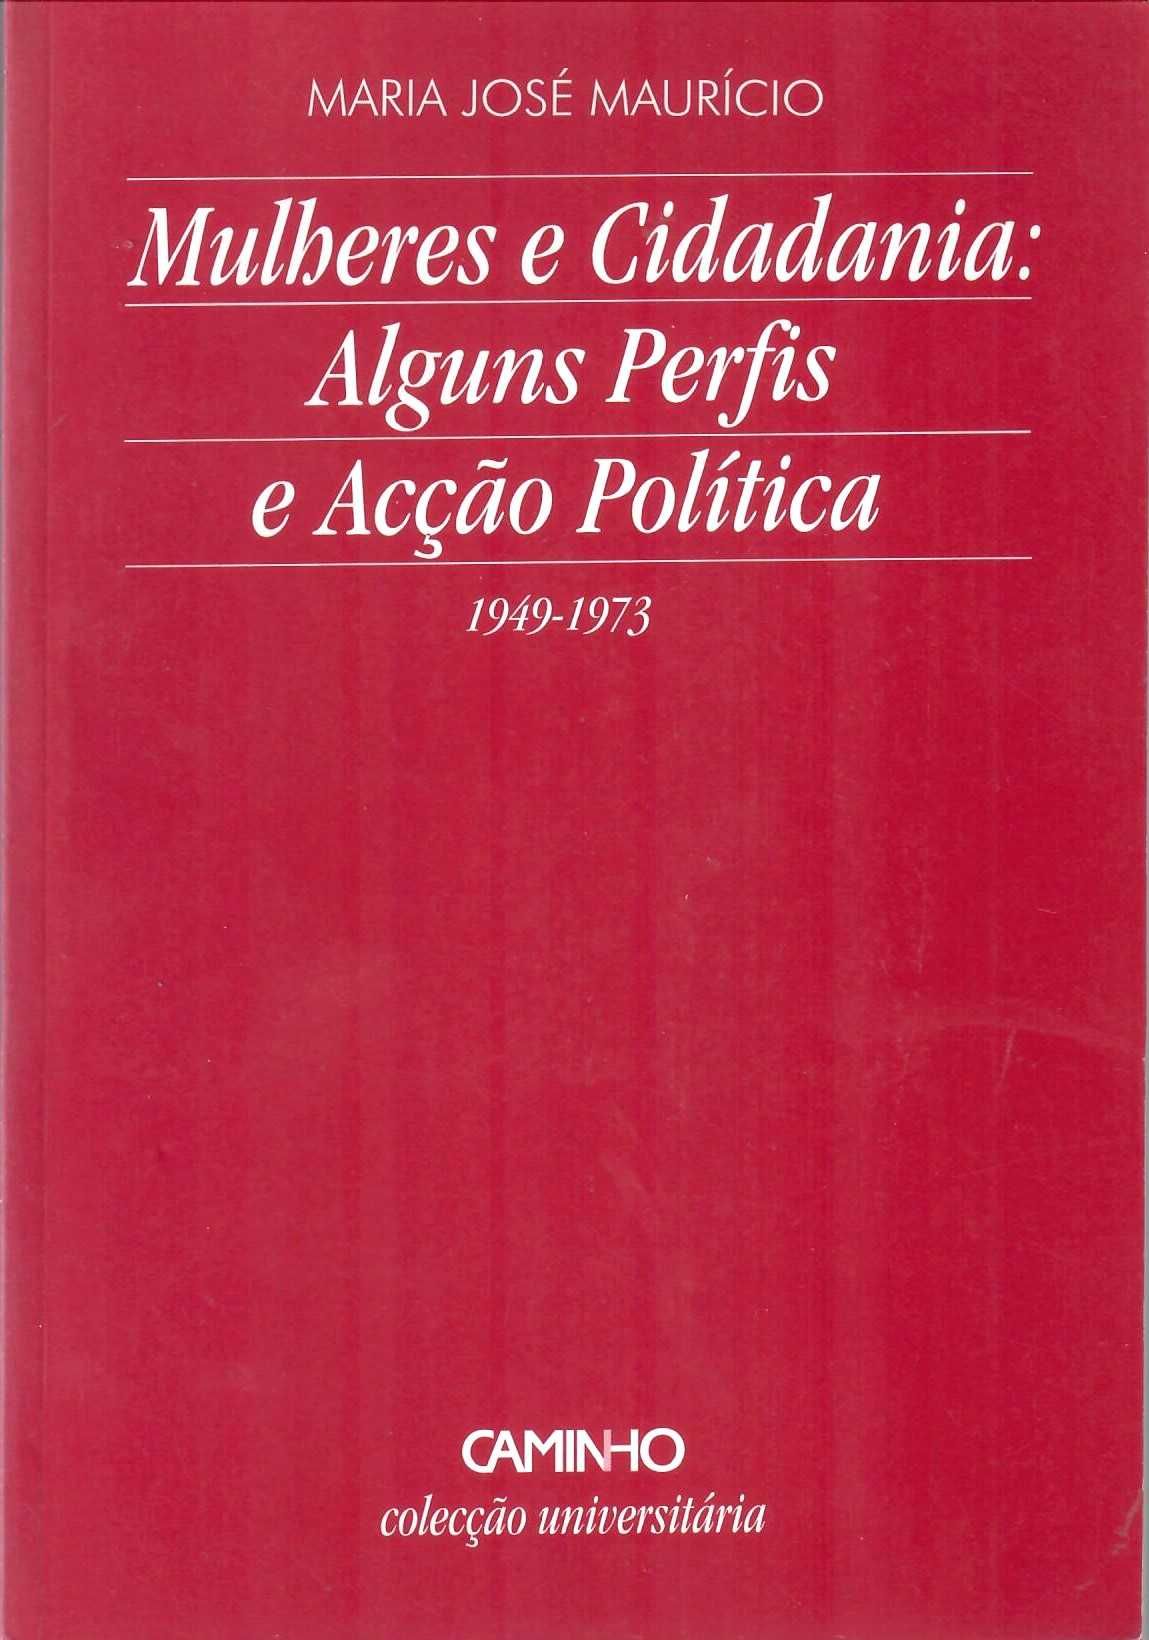 MªJosé Maurìcio «Mulheres e Cidadania Perfis e Acção Política 1949-73»